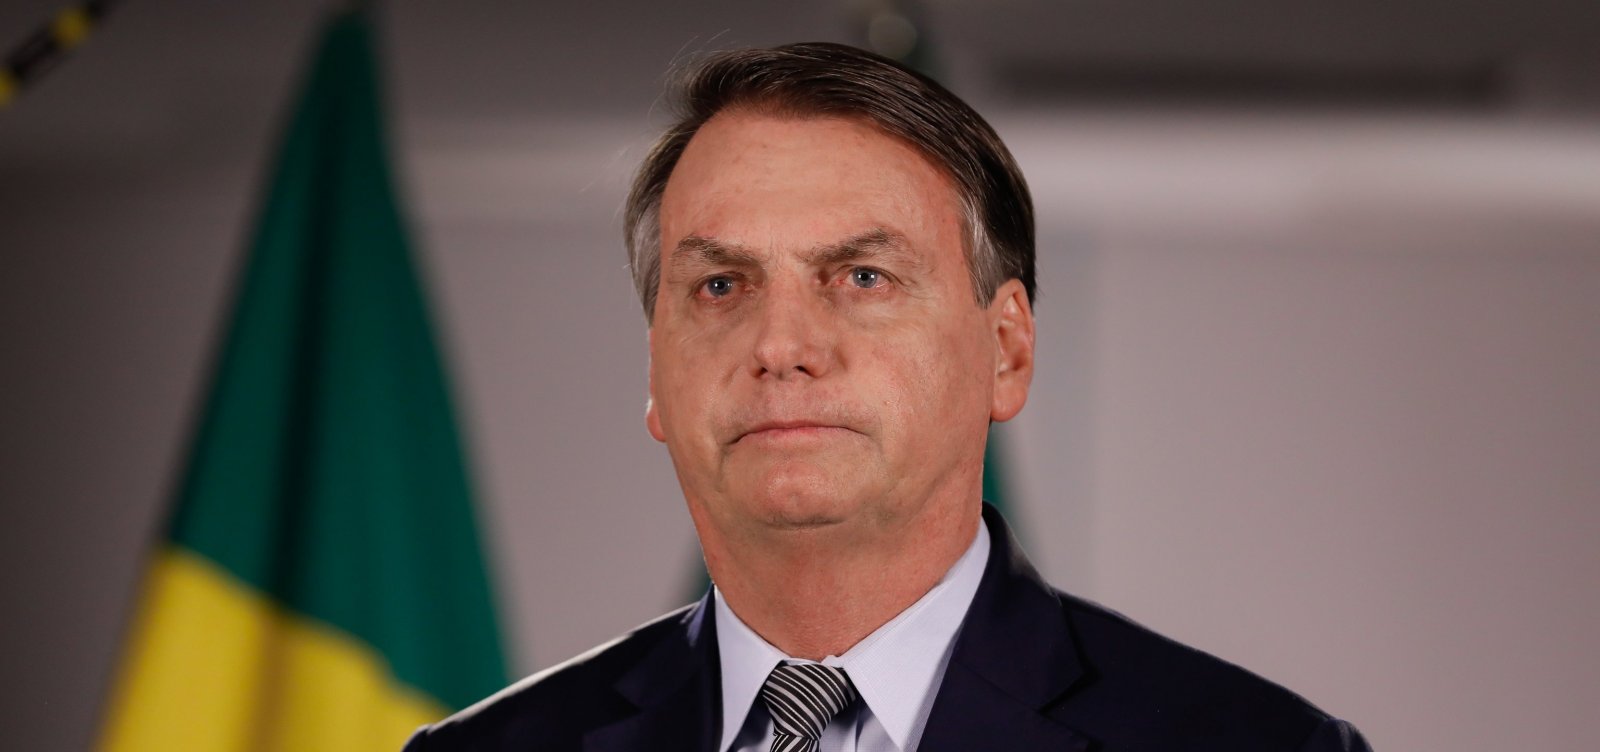 Cid "é decente e não vai inventar nada", diz Bolsonaro sobre delação premiada de tenente